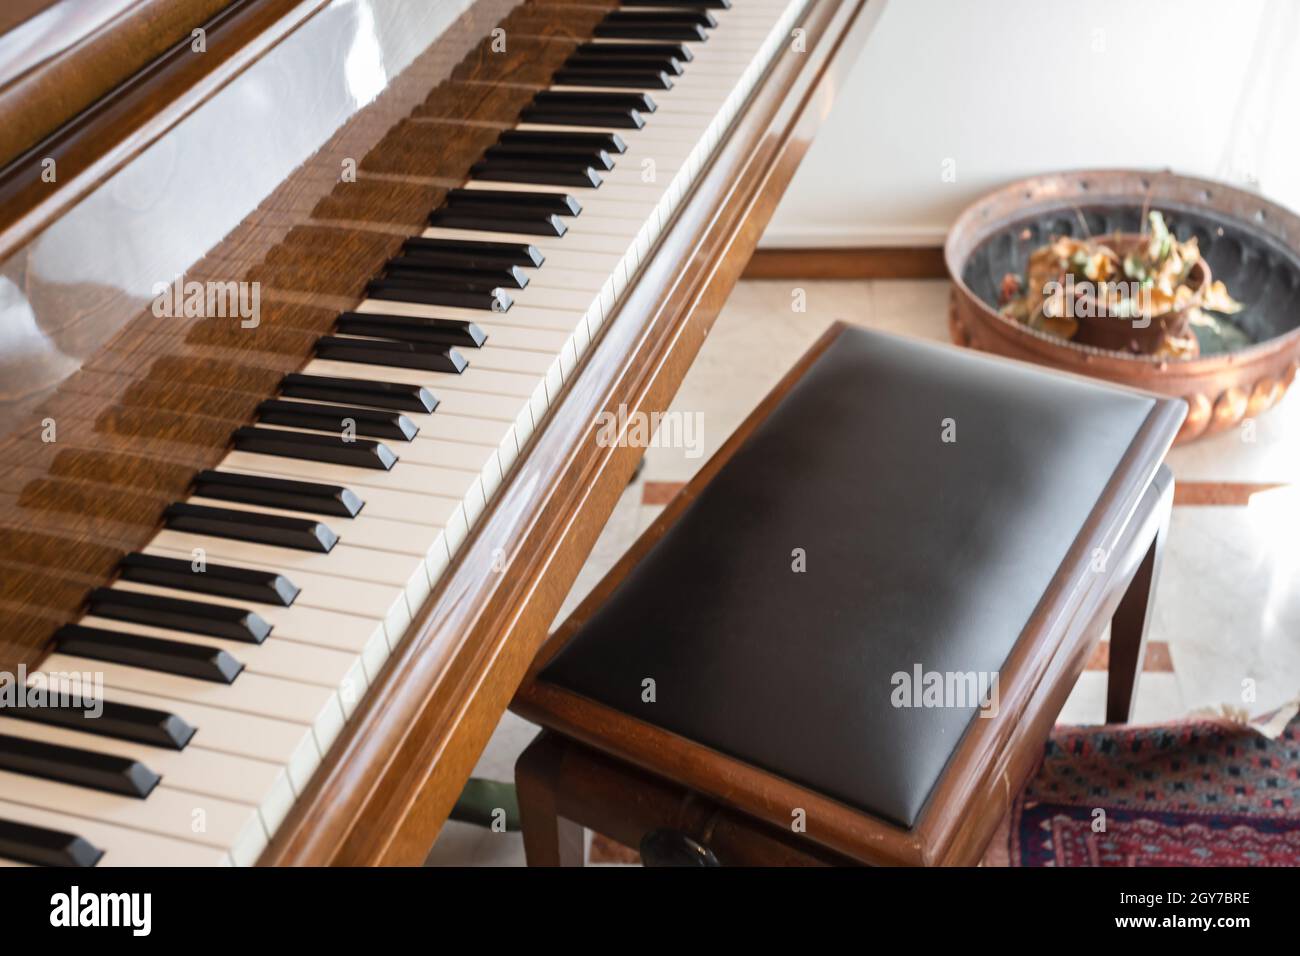 Prise de vue rognée d'un piano classique dans une salle à la lumière du jour. Banque D'Images